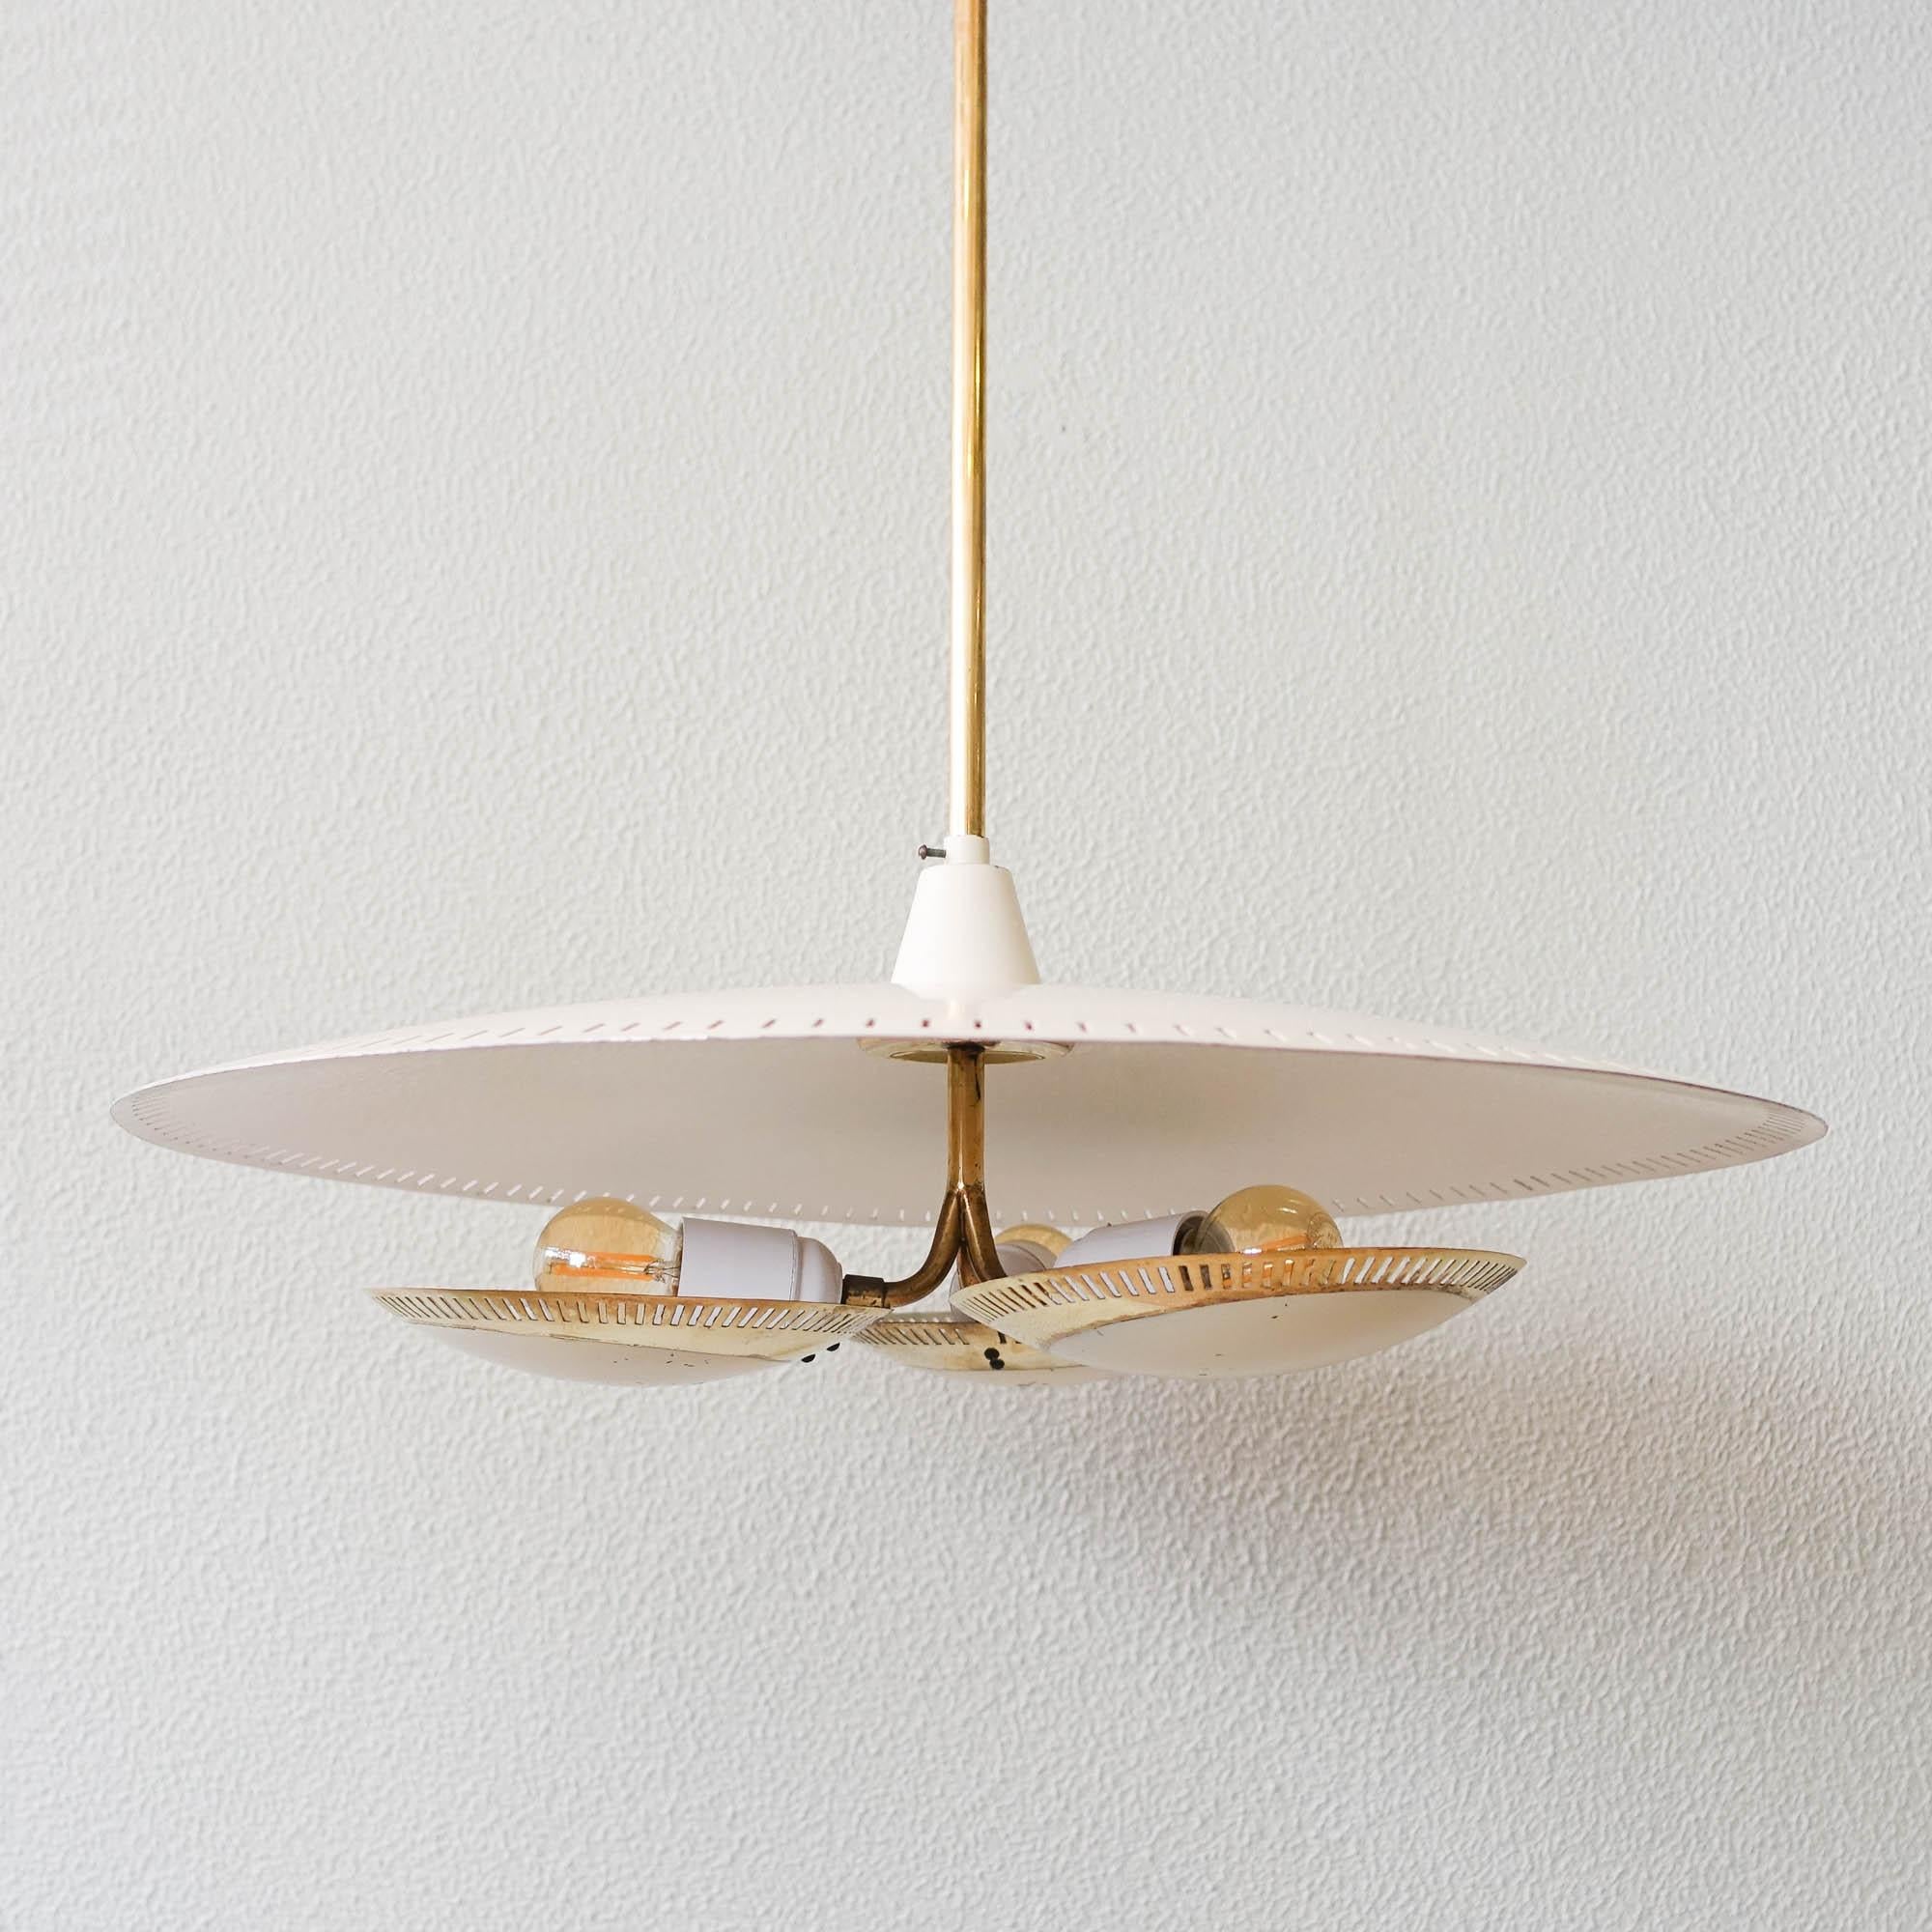 Mid-20th Century Mid-Century Italian Pendant Lamp, in the style of Gino Sarfatti for Arteluce